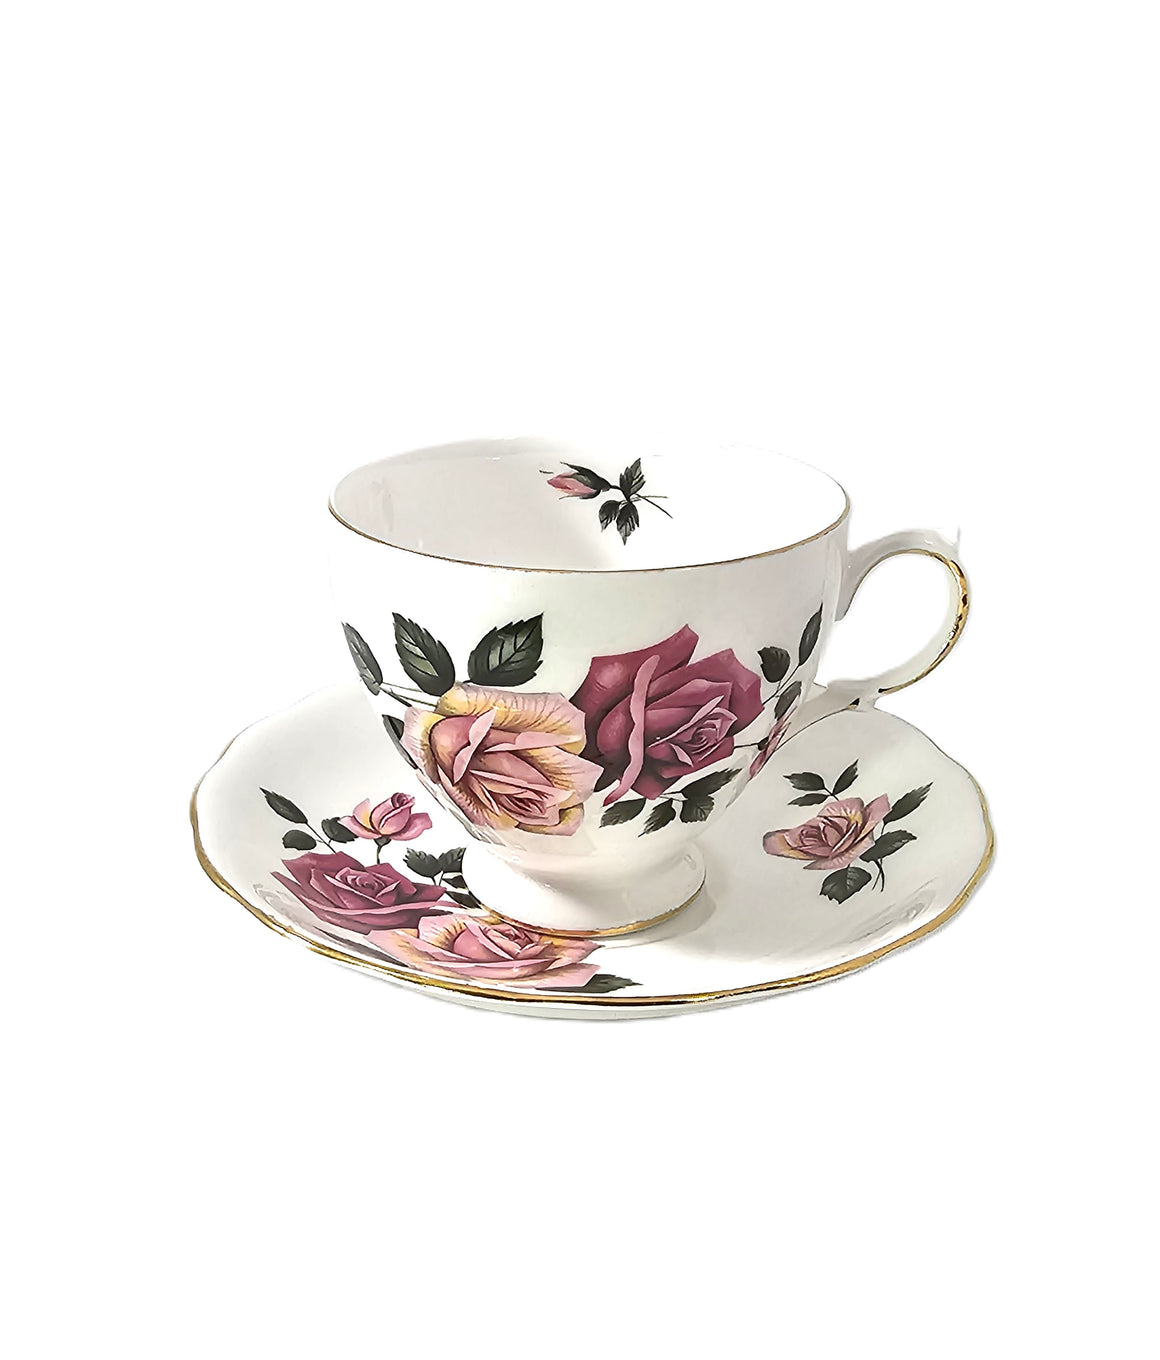 Royal Vale Porcelain Cup & Saucer Set Pattern 8329 Pink Roses